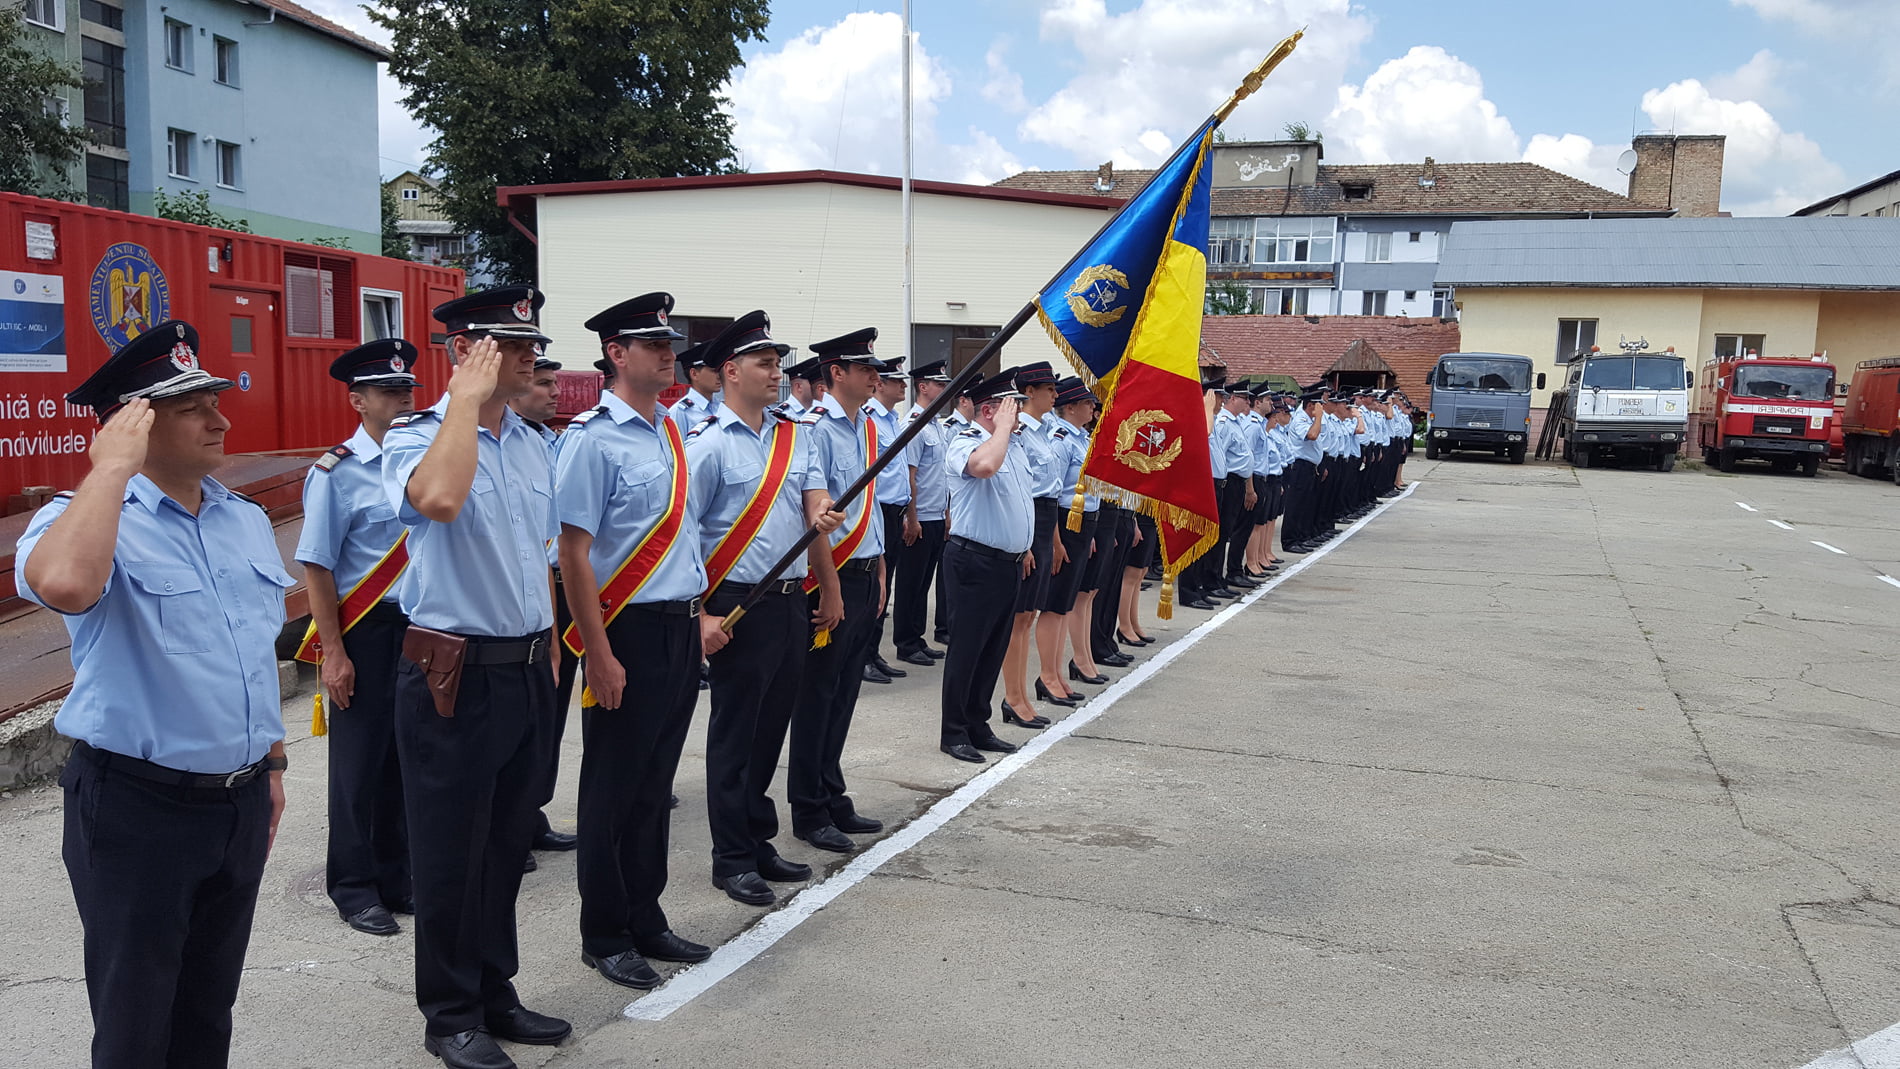 Pompieri din cadrul ISU Neamț, decorați și avansați în grad